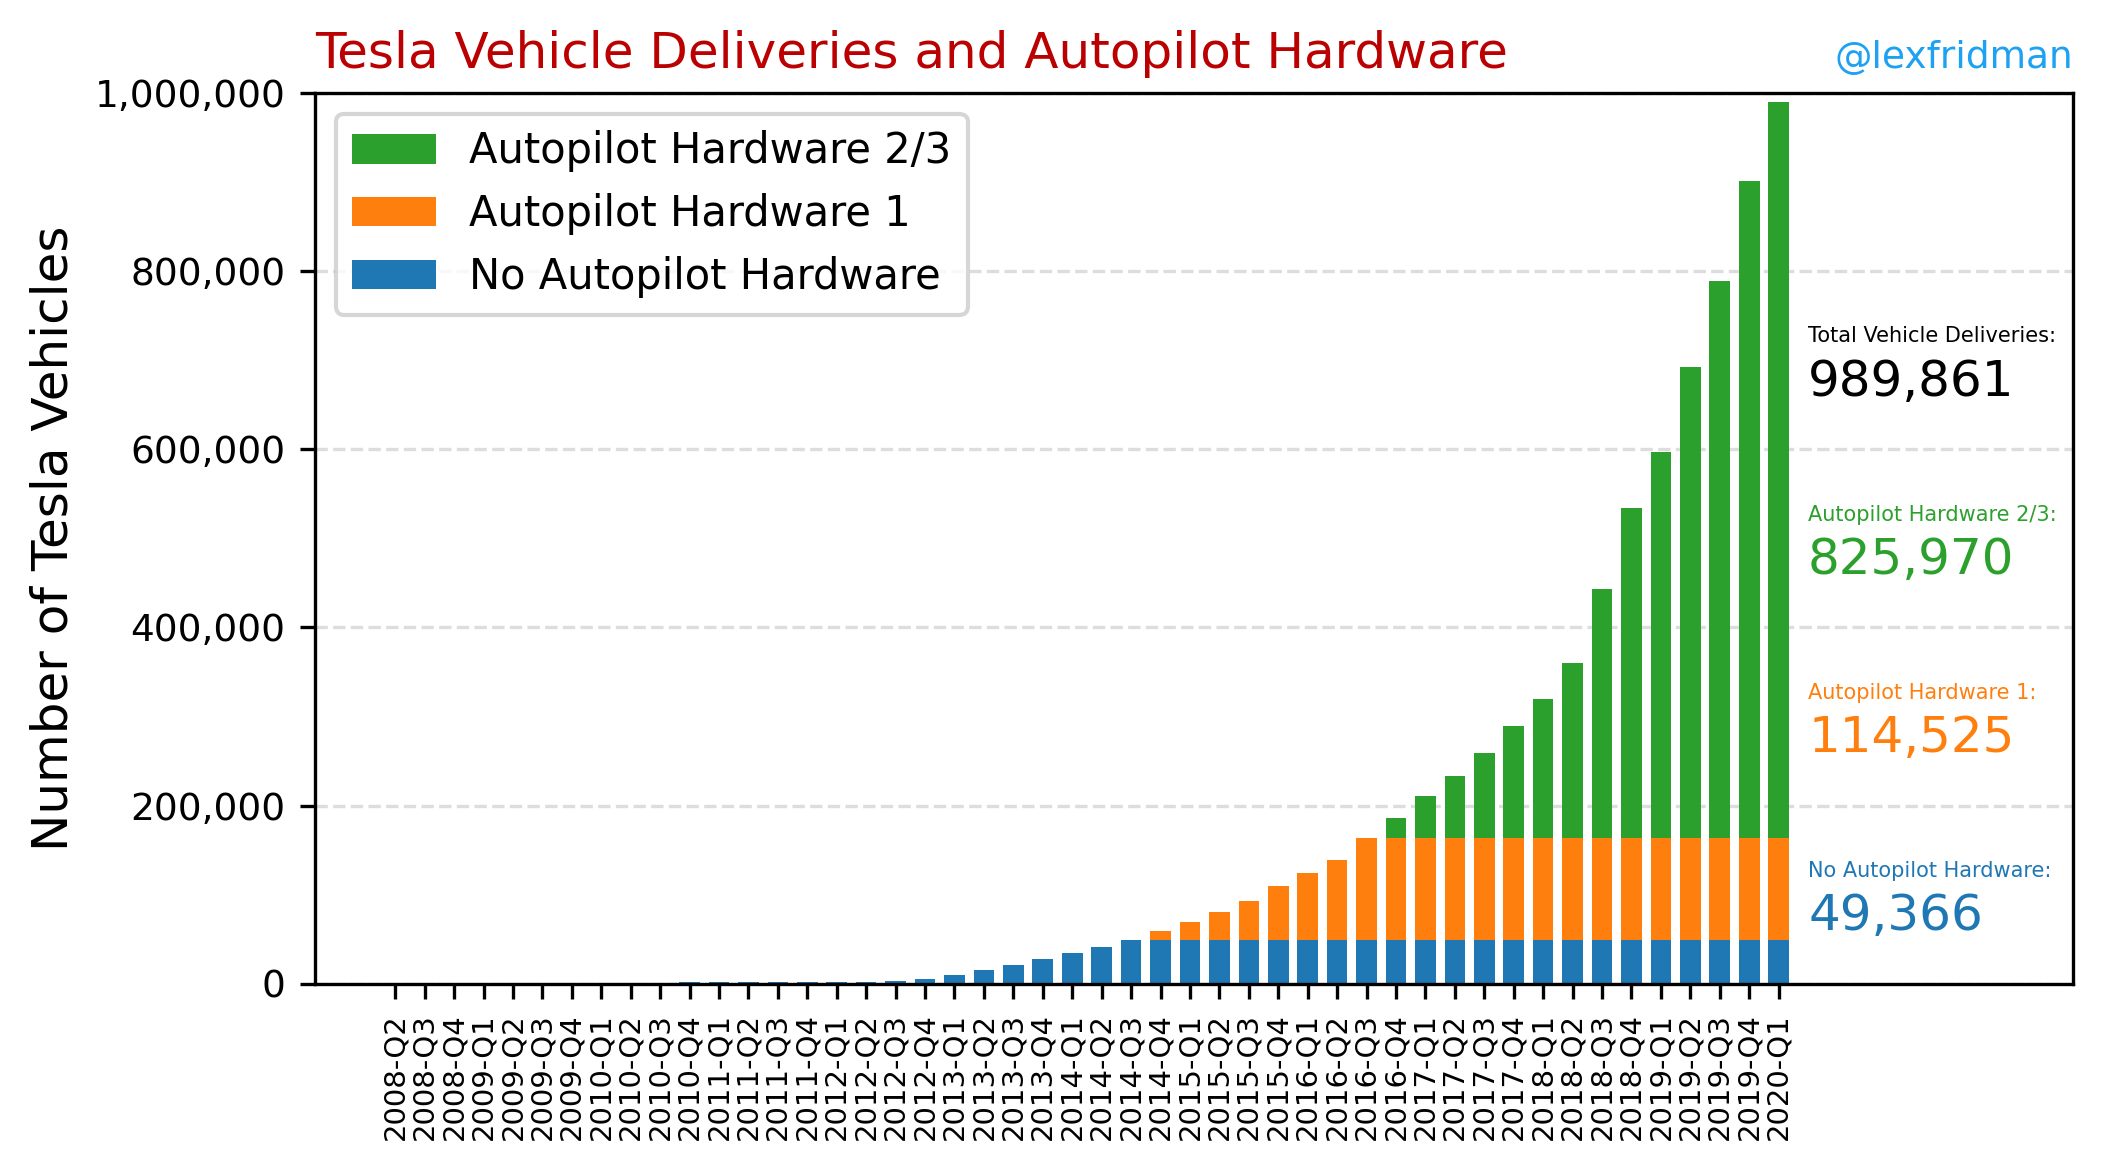 Tesla Vehicle Deliveries and Autopilot Mileage Statistics Lex Fridman